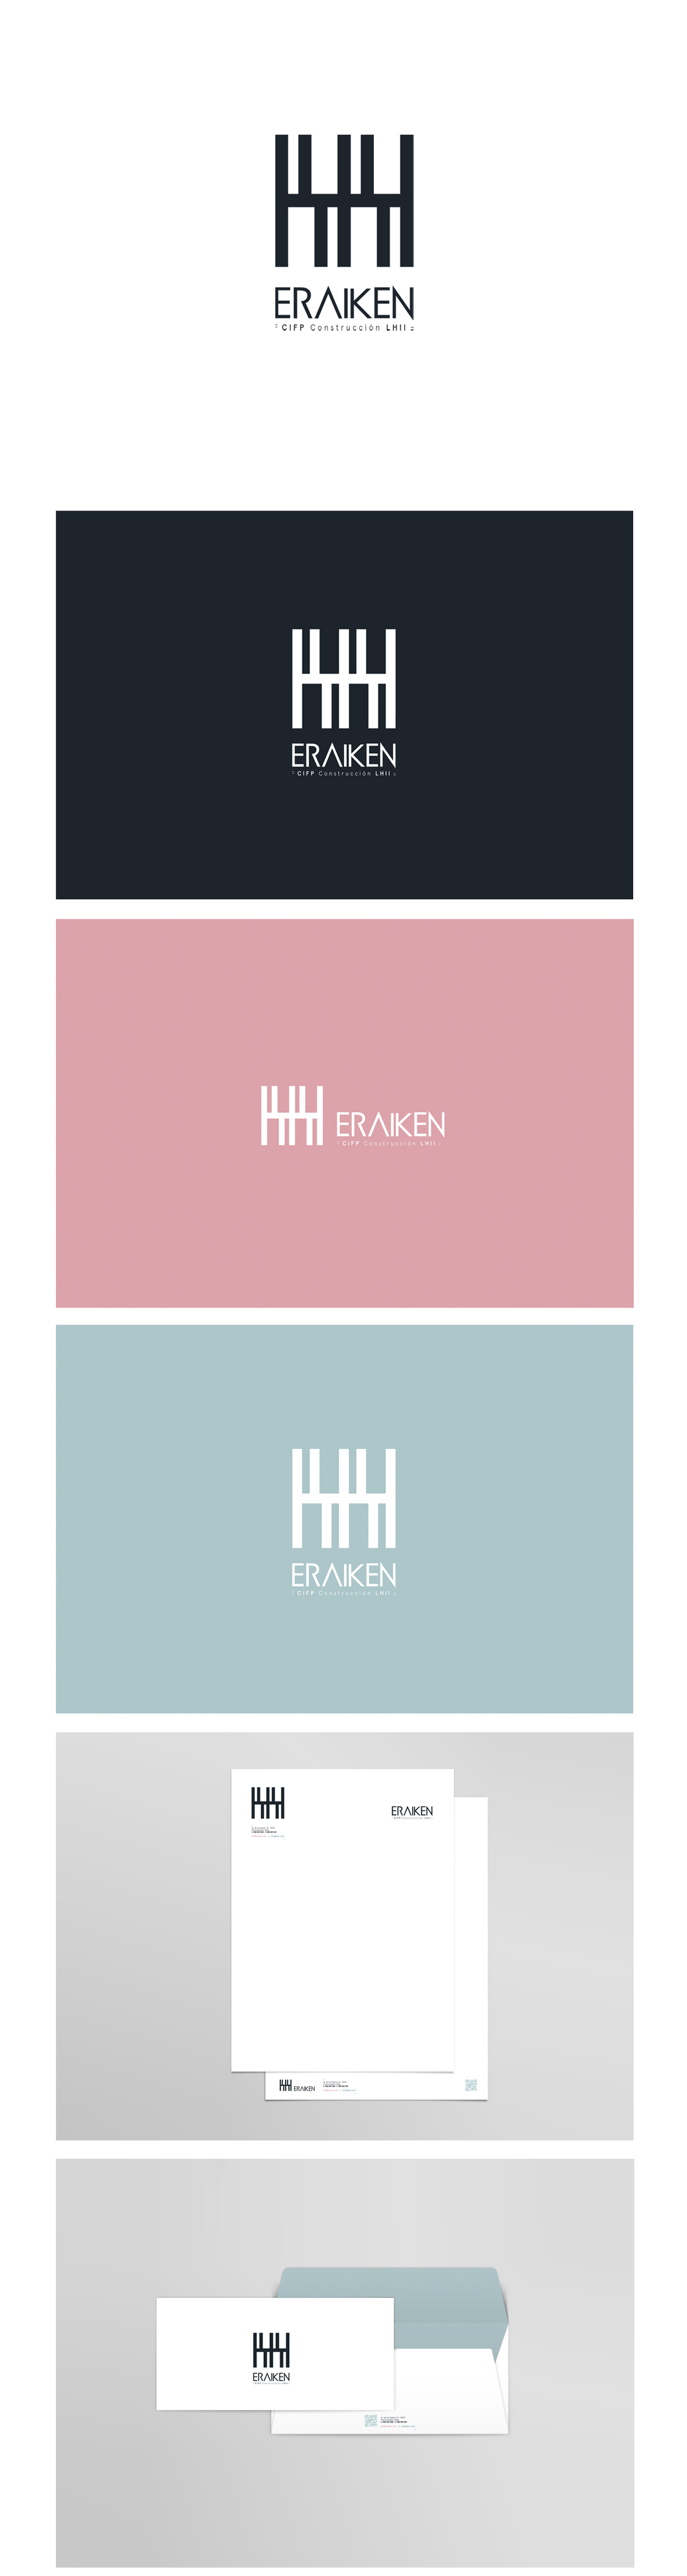 Eraiken-Logo-y-papeleria-01